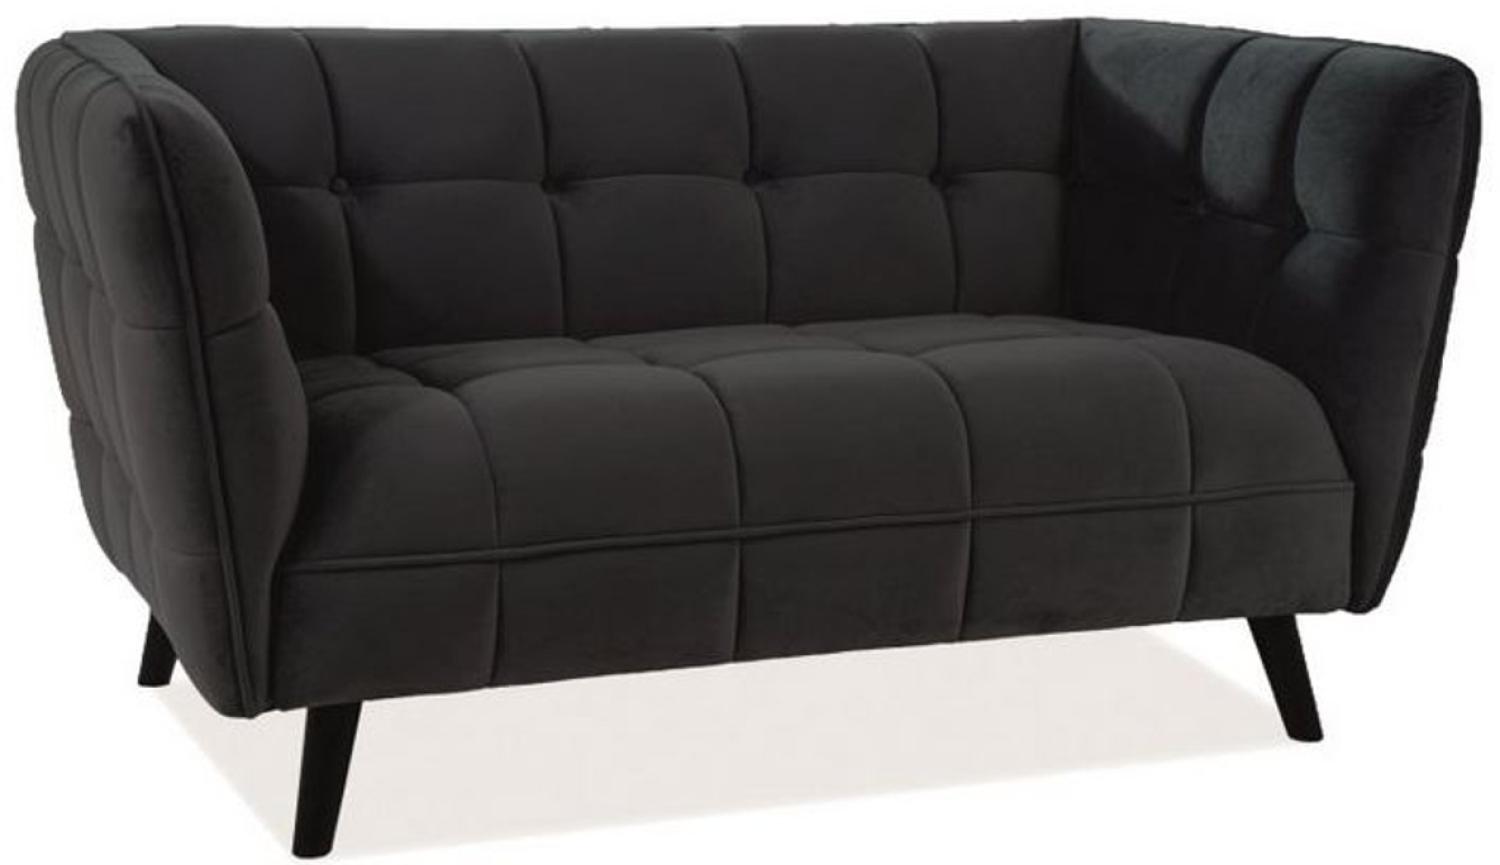 Casa Padrino Luxus Wohnzimmer Sofa mit edlem Samtstoff 145 x 85 x H. 78 cm - Luxus Möbel Bild 1